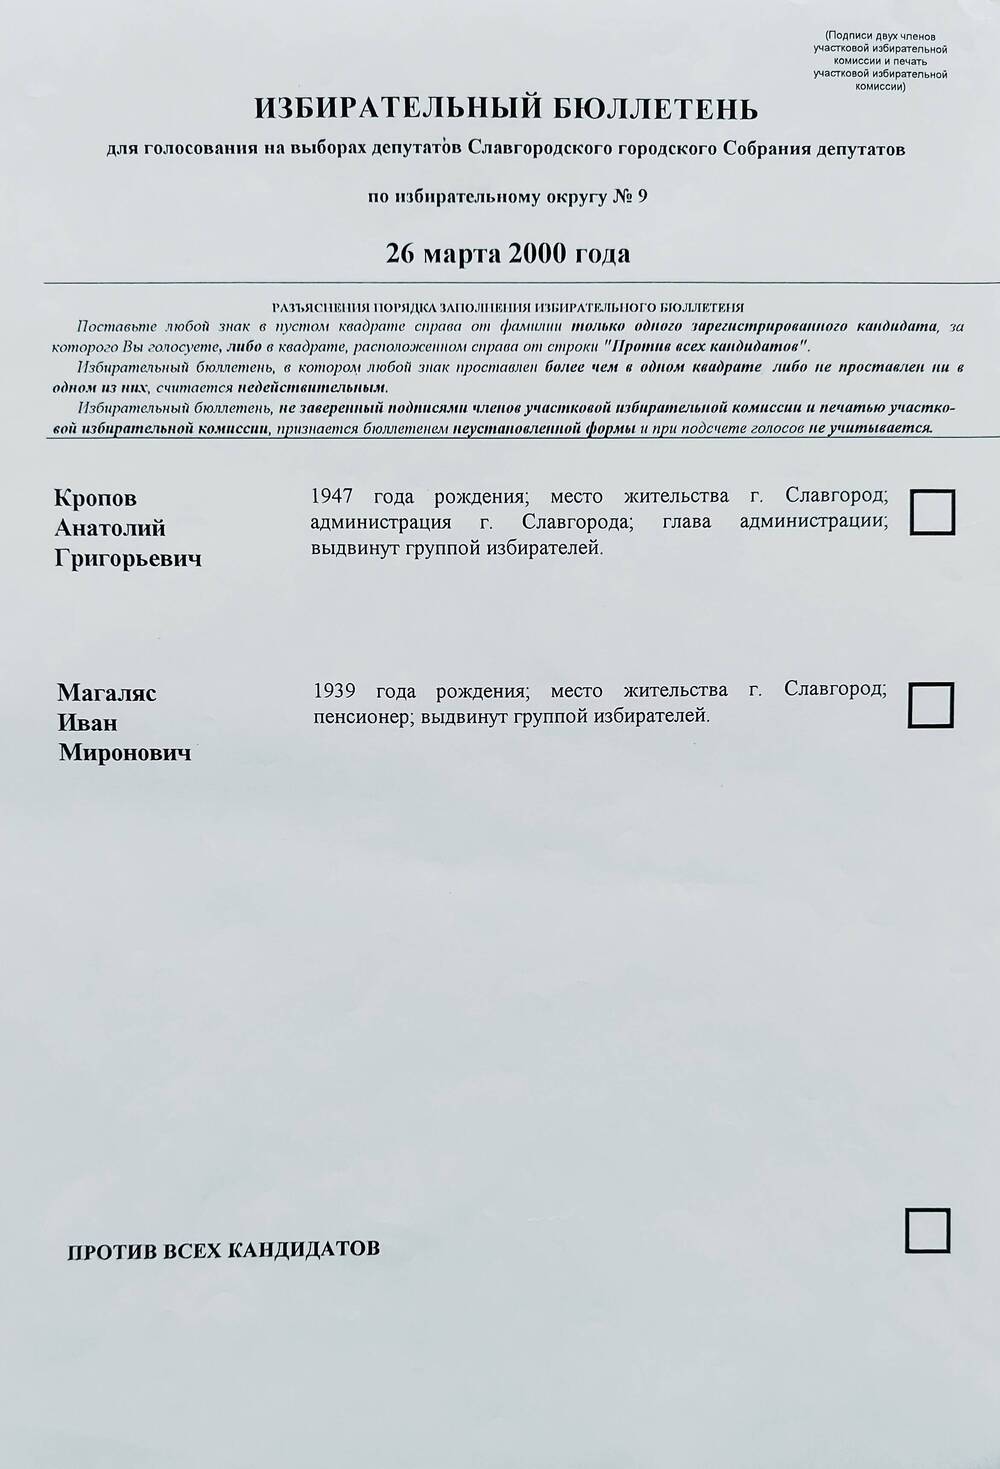 Бюллетень избирательный для голосования на выборах депутатов Славгородского городского Собрания депутатов по избирательному округу № 9 от 26 марта 2000 года.